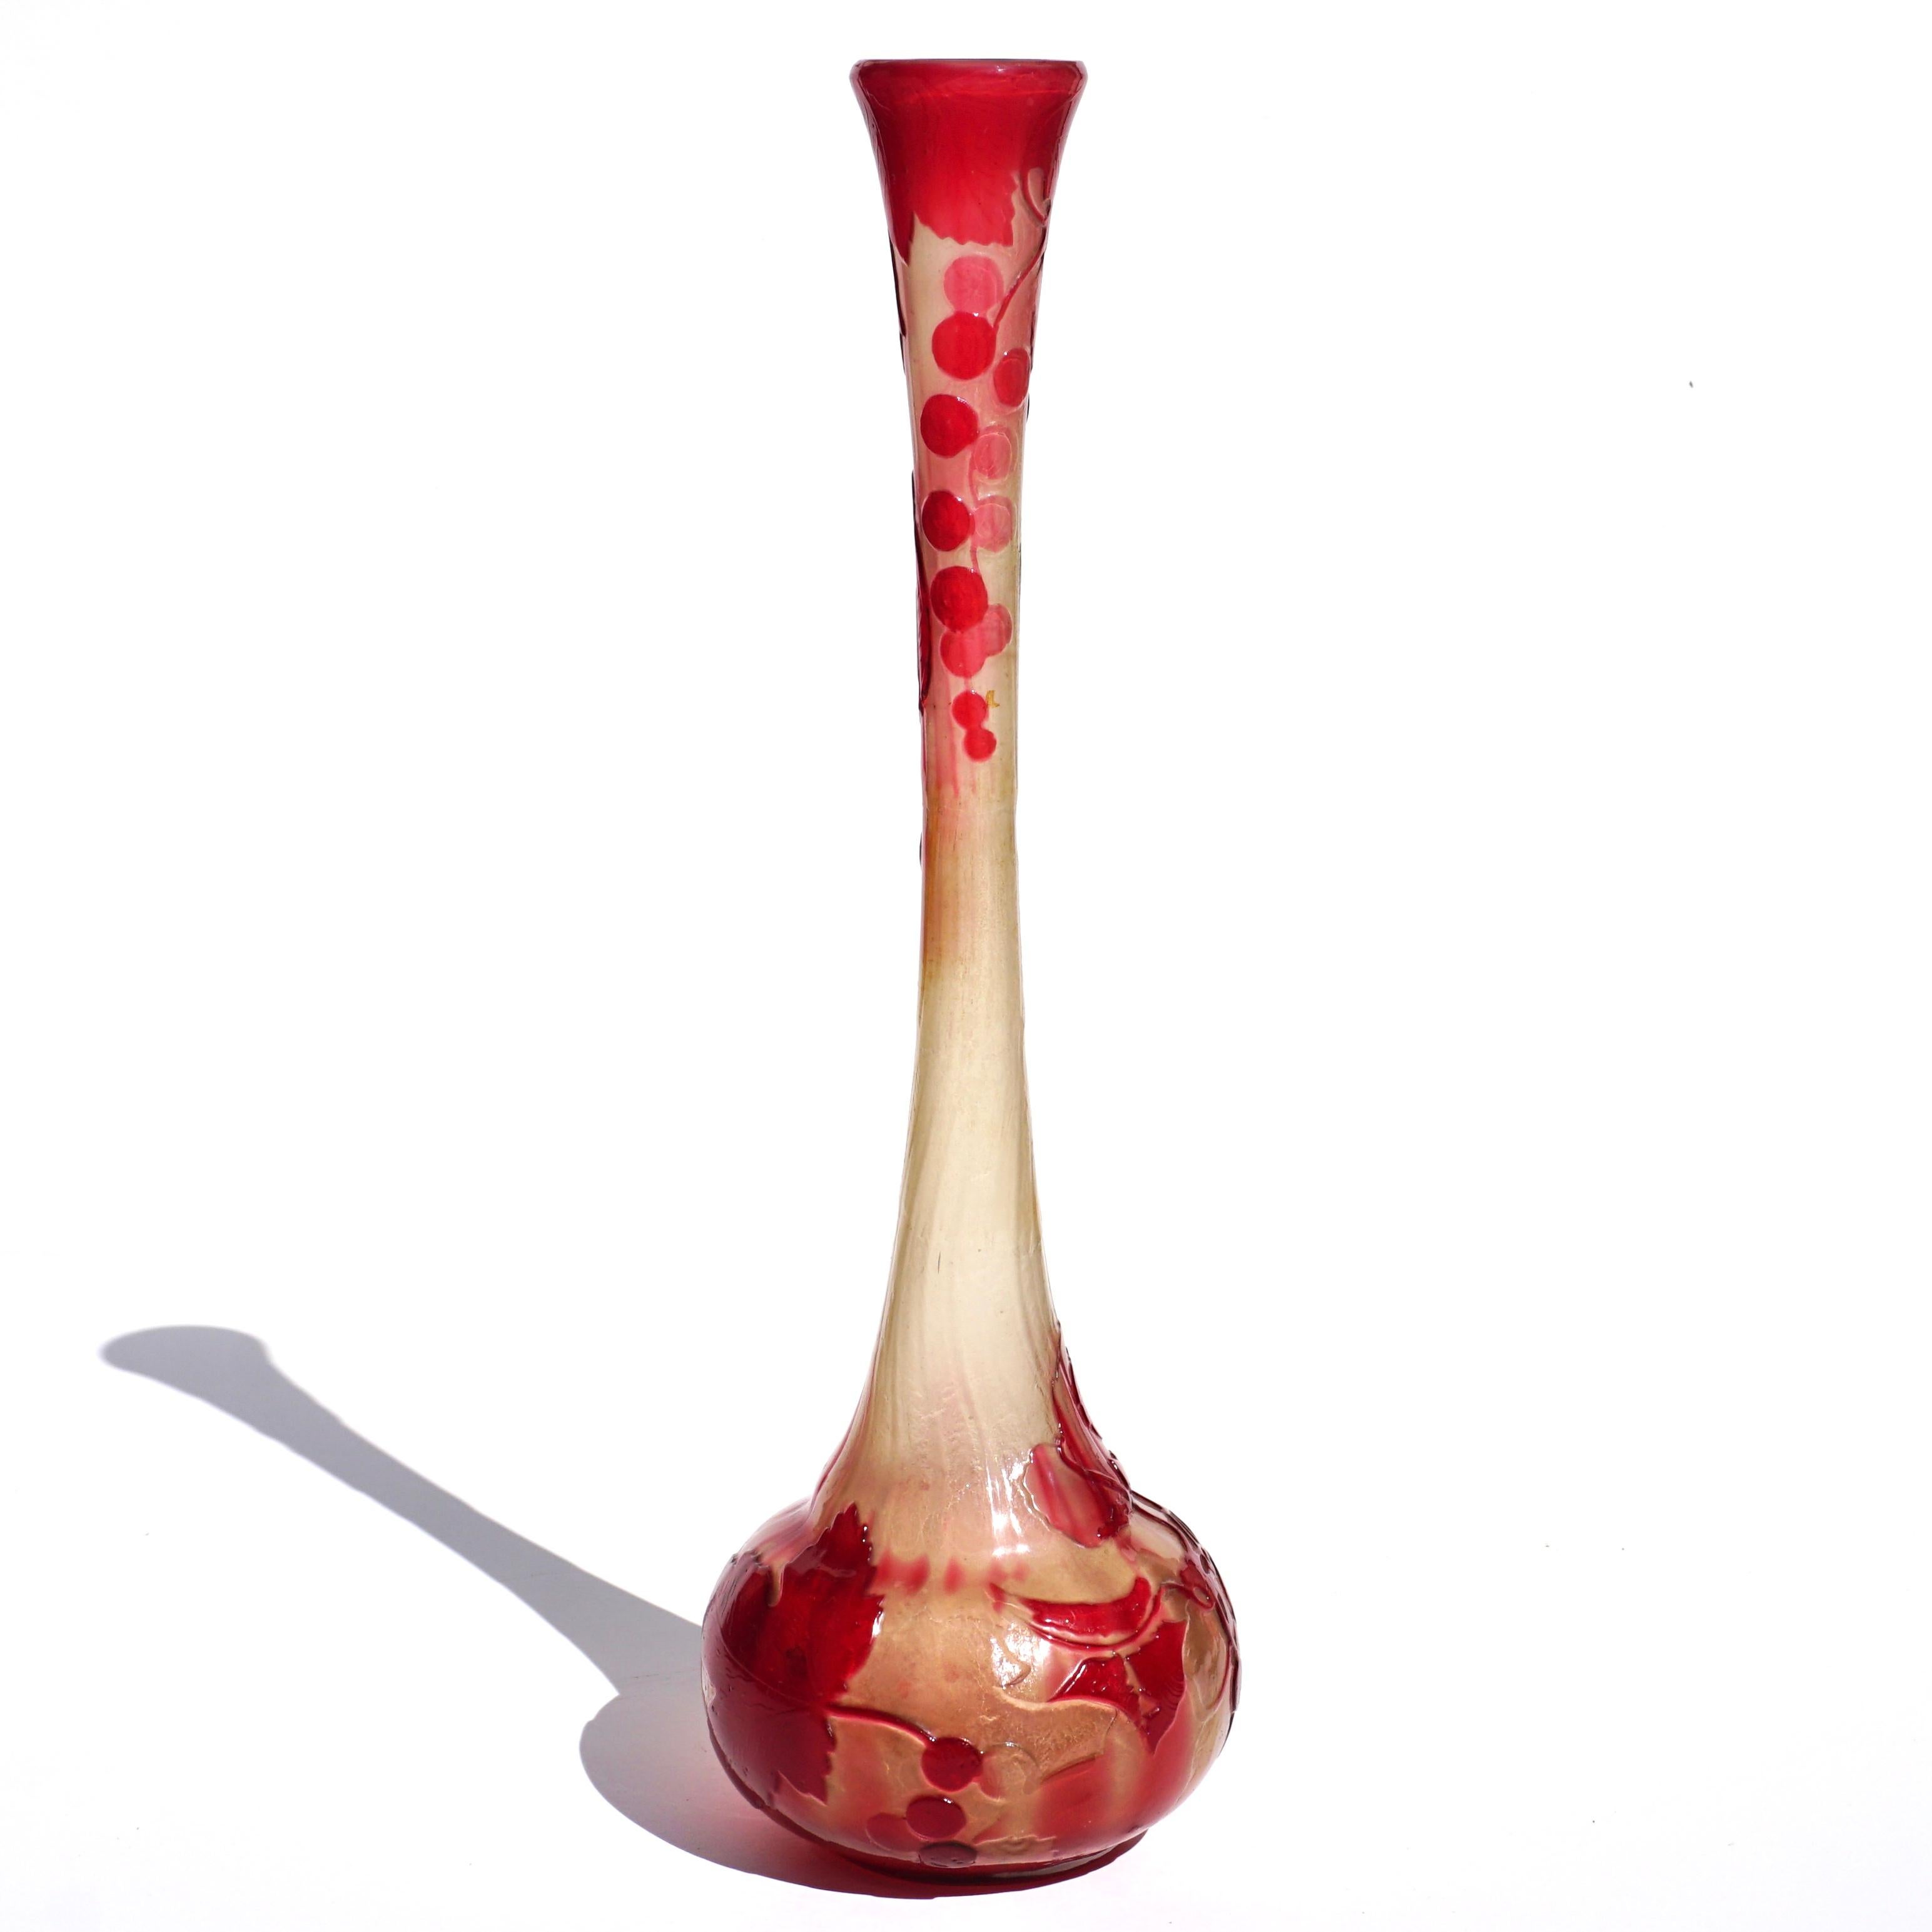 Große frühe Gallé-Vase aus feuerpoliertem Kamee-Glas, um 1900

Unterzeichnet: In japonistischer Schrift  